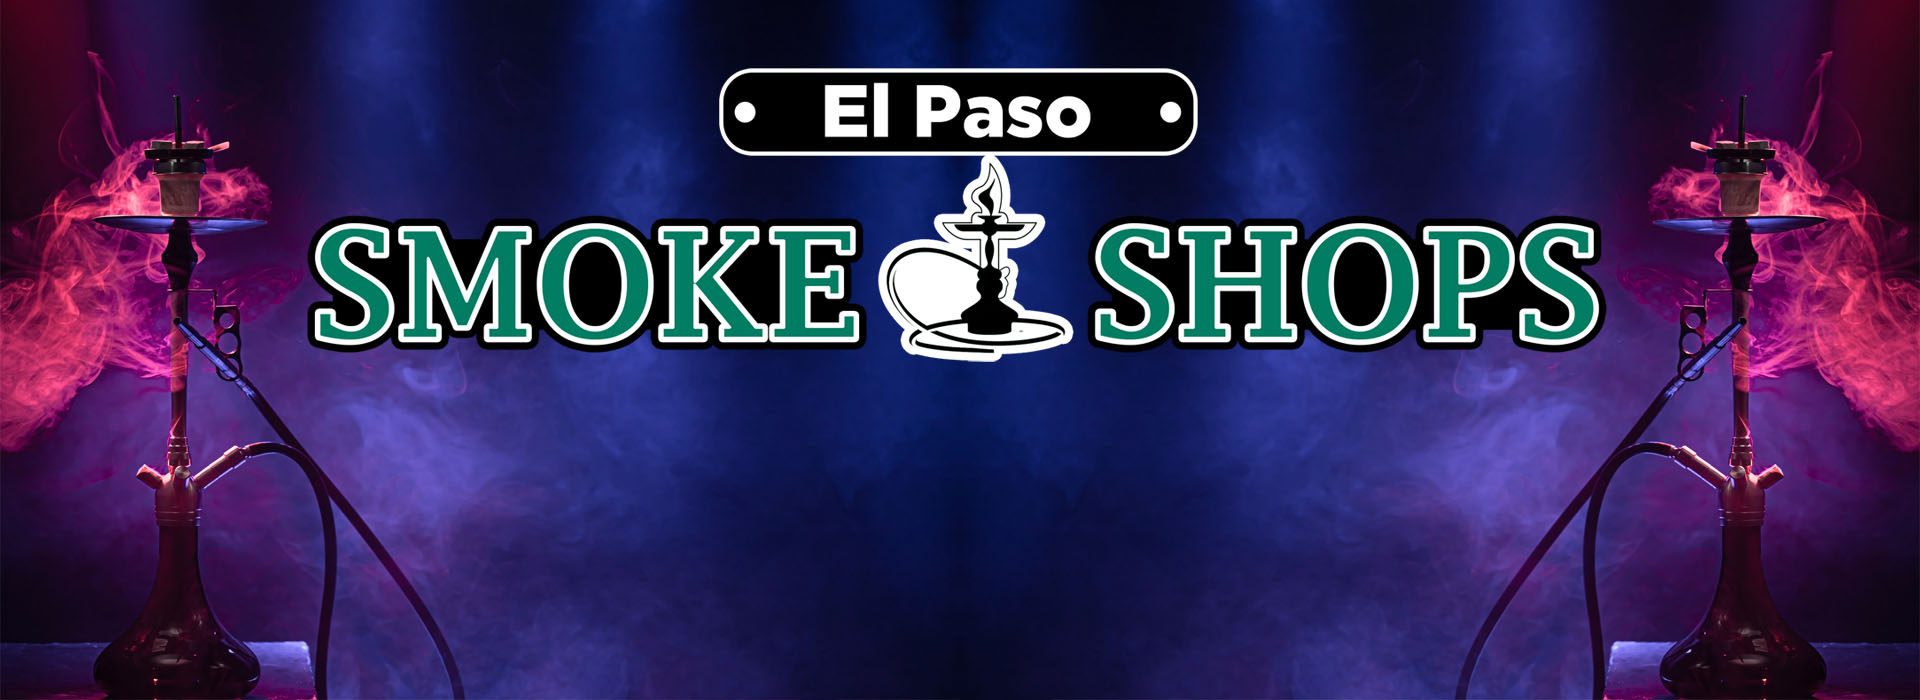 Smoke Shop El Paso | Westside Smoke Shops